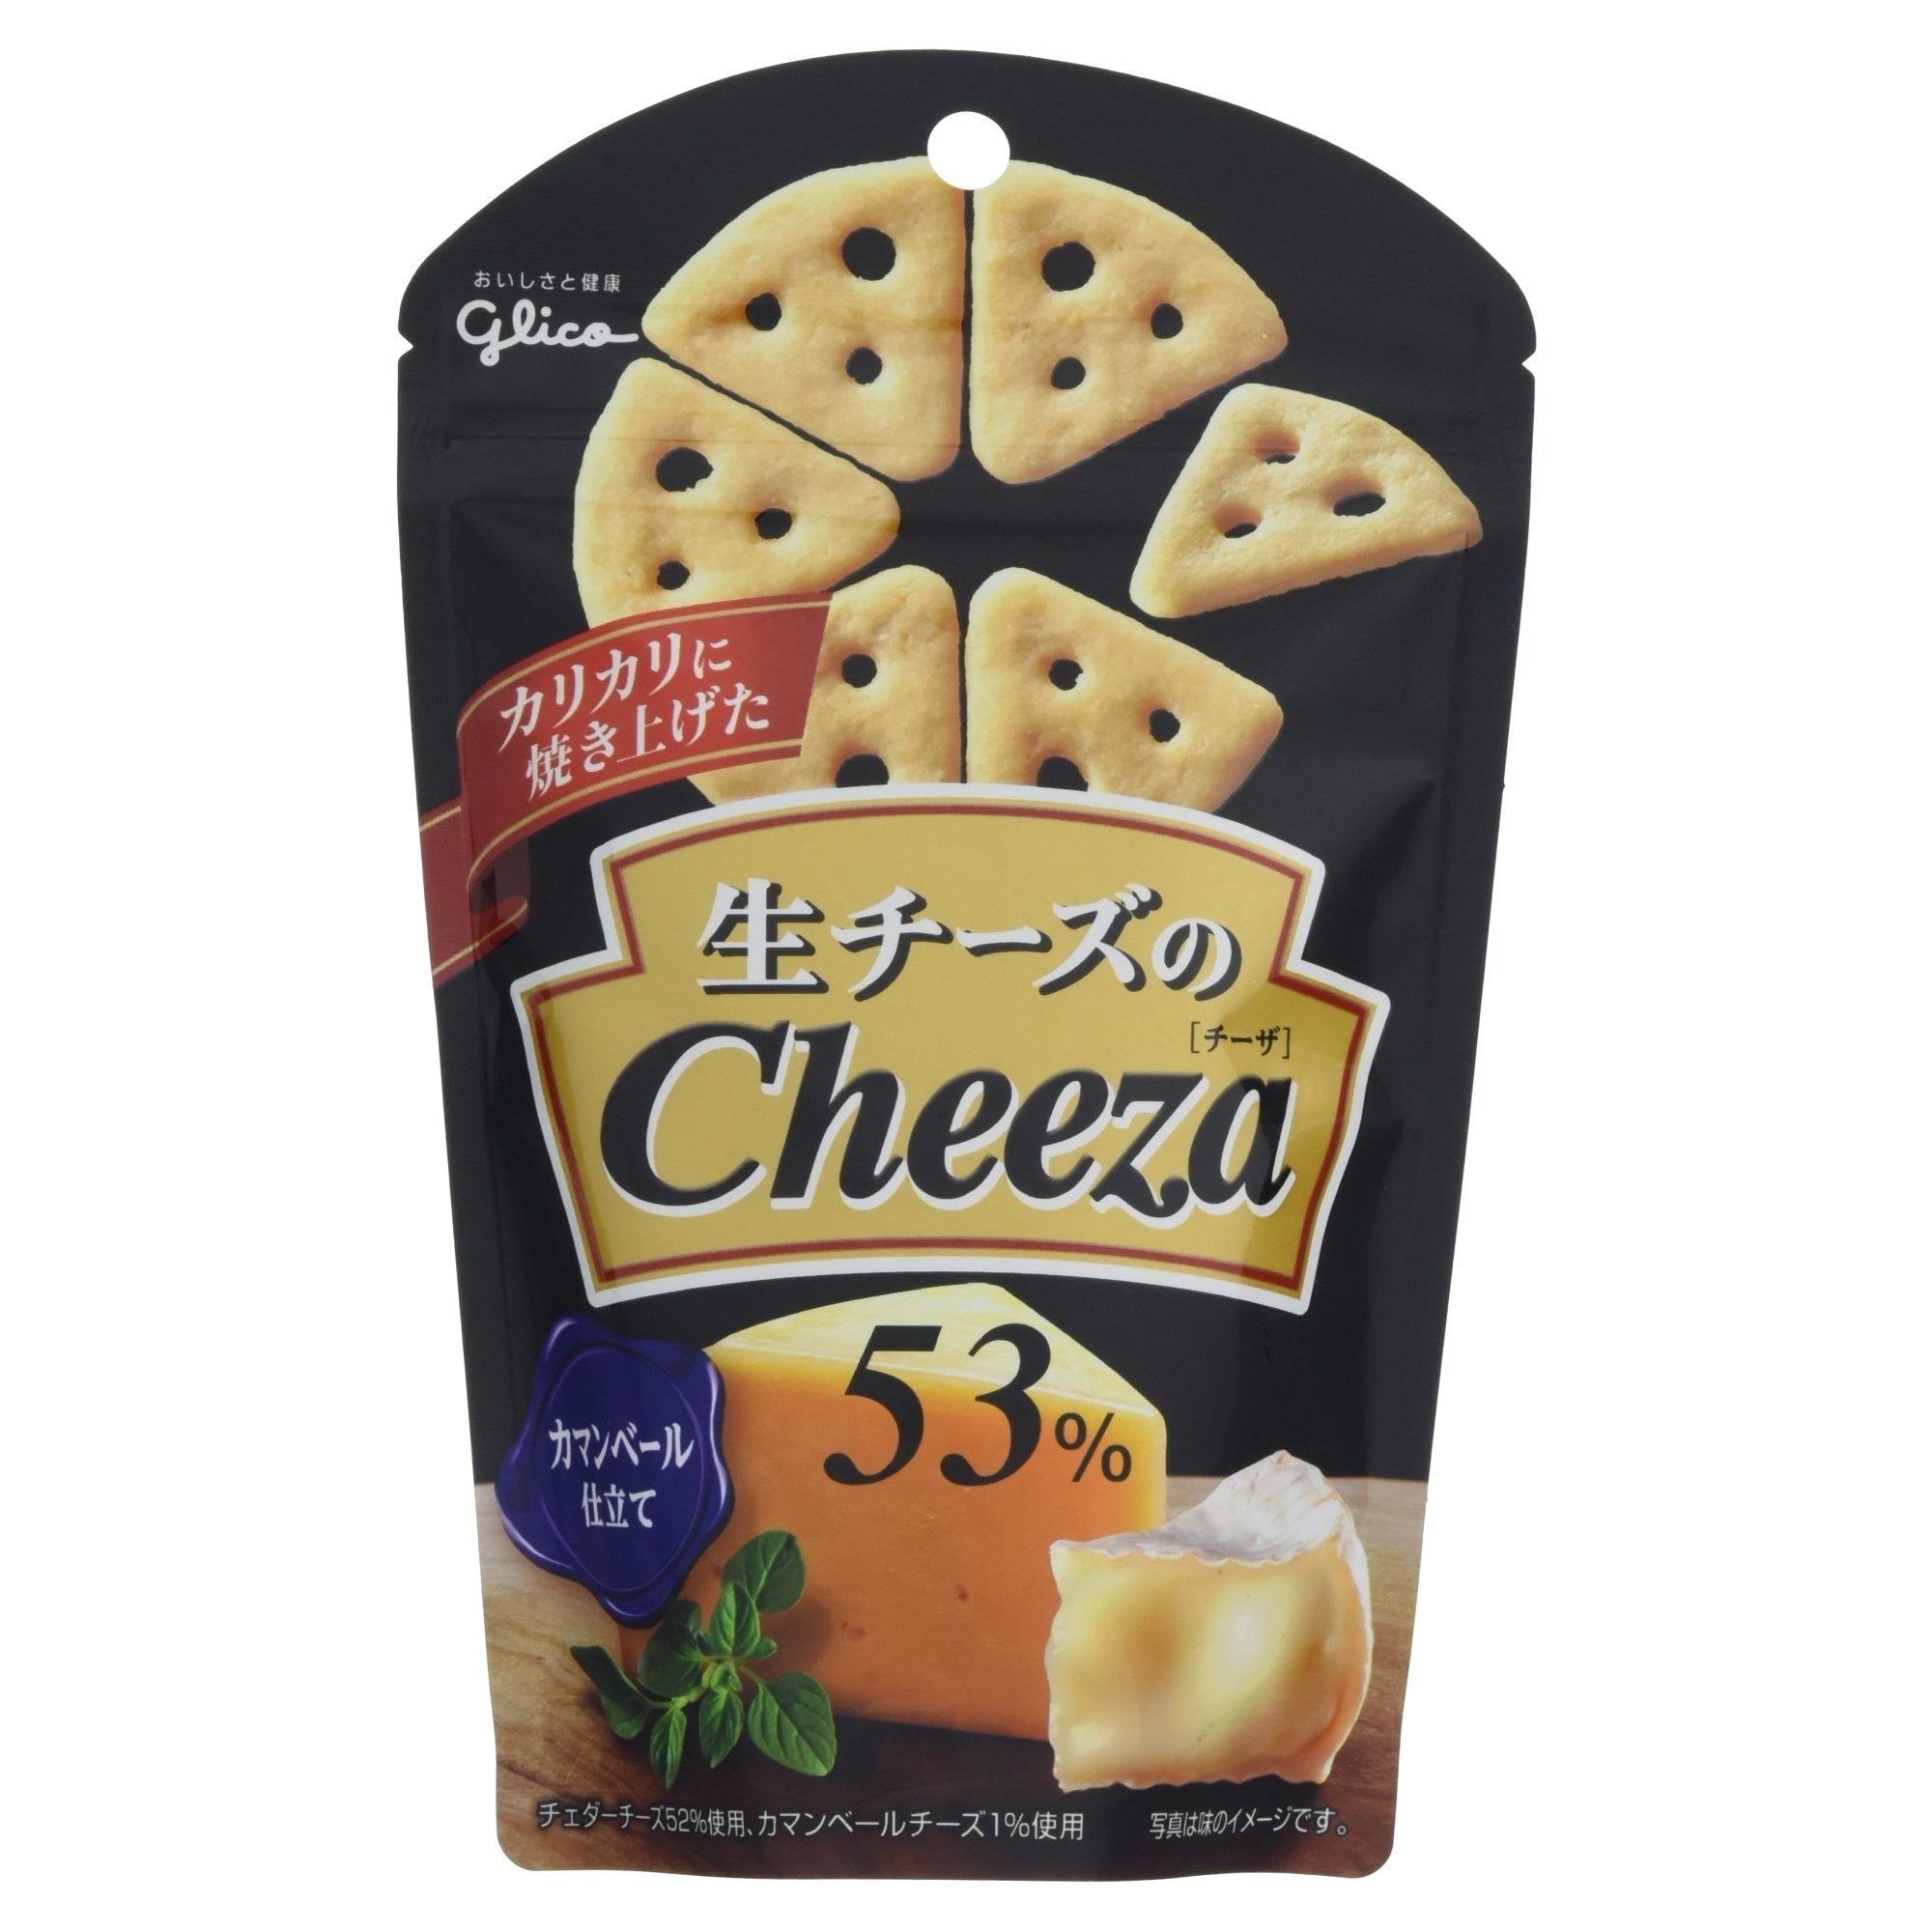 Glico Cheeza Crackers, 1.41 Oz